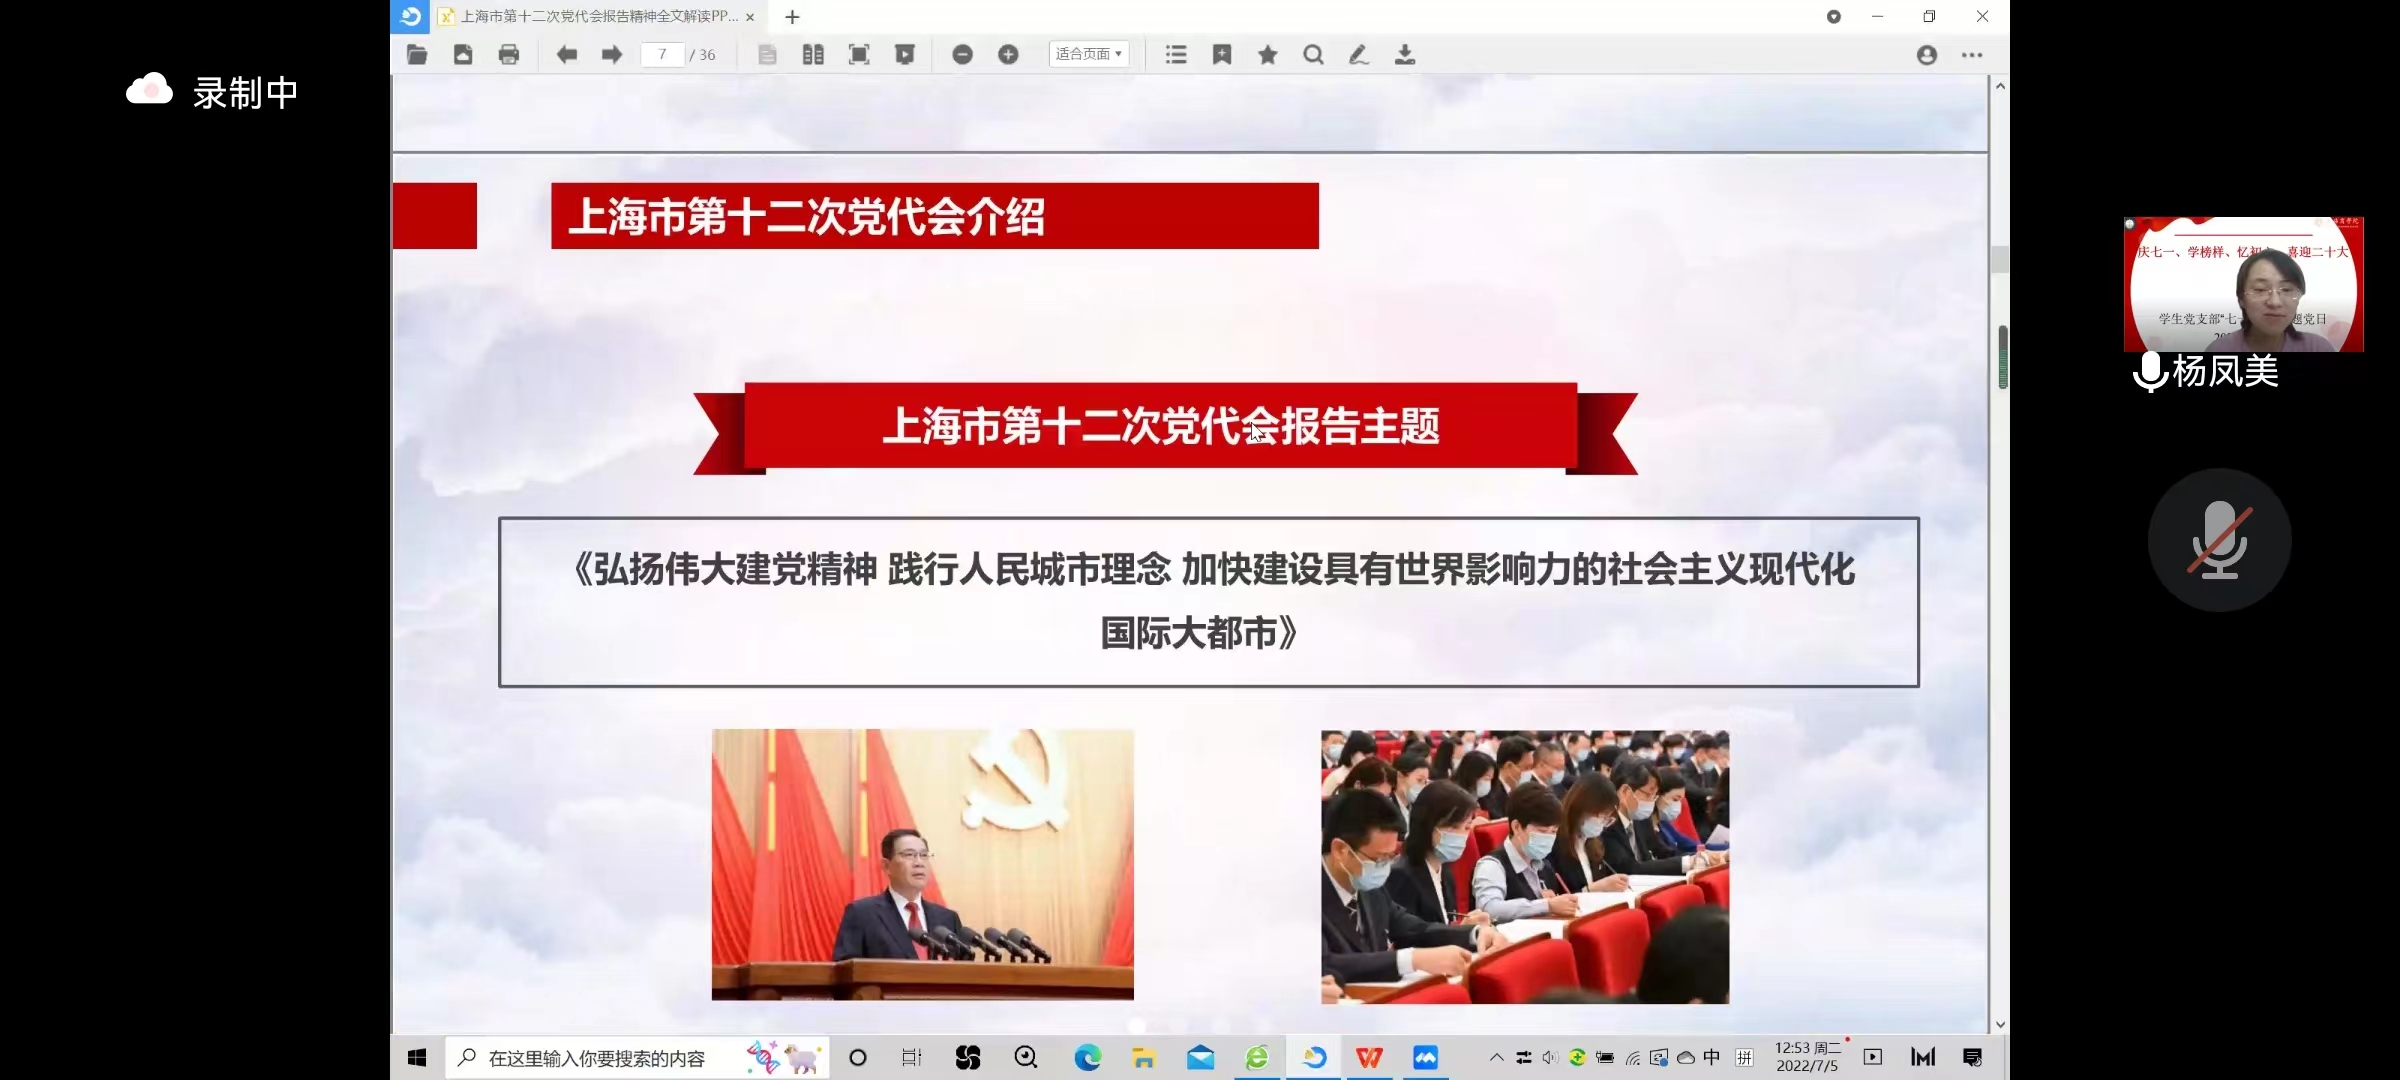 与会成员学习上海市第十二次党代会报告精神